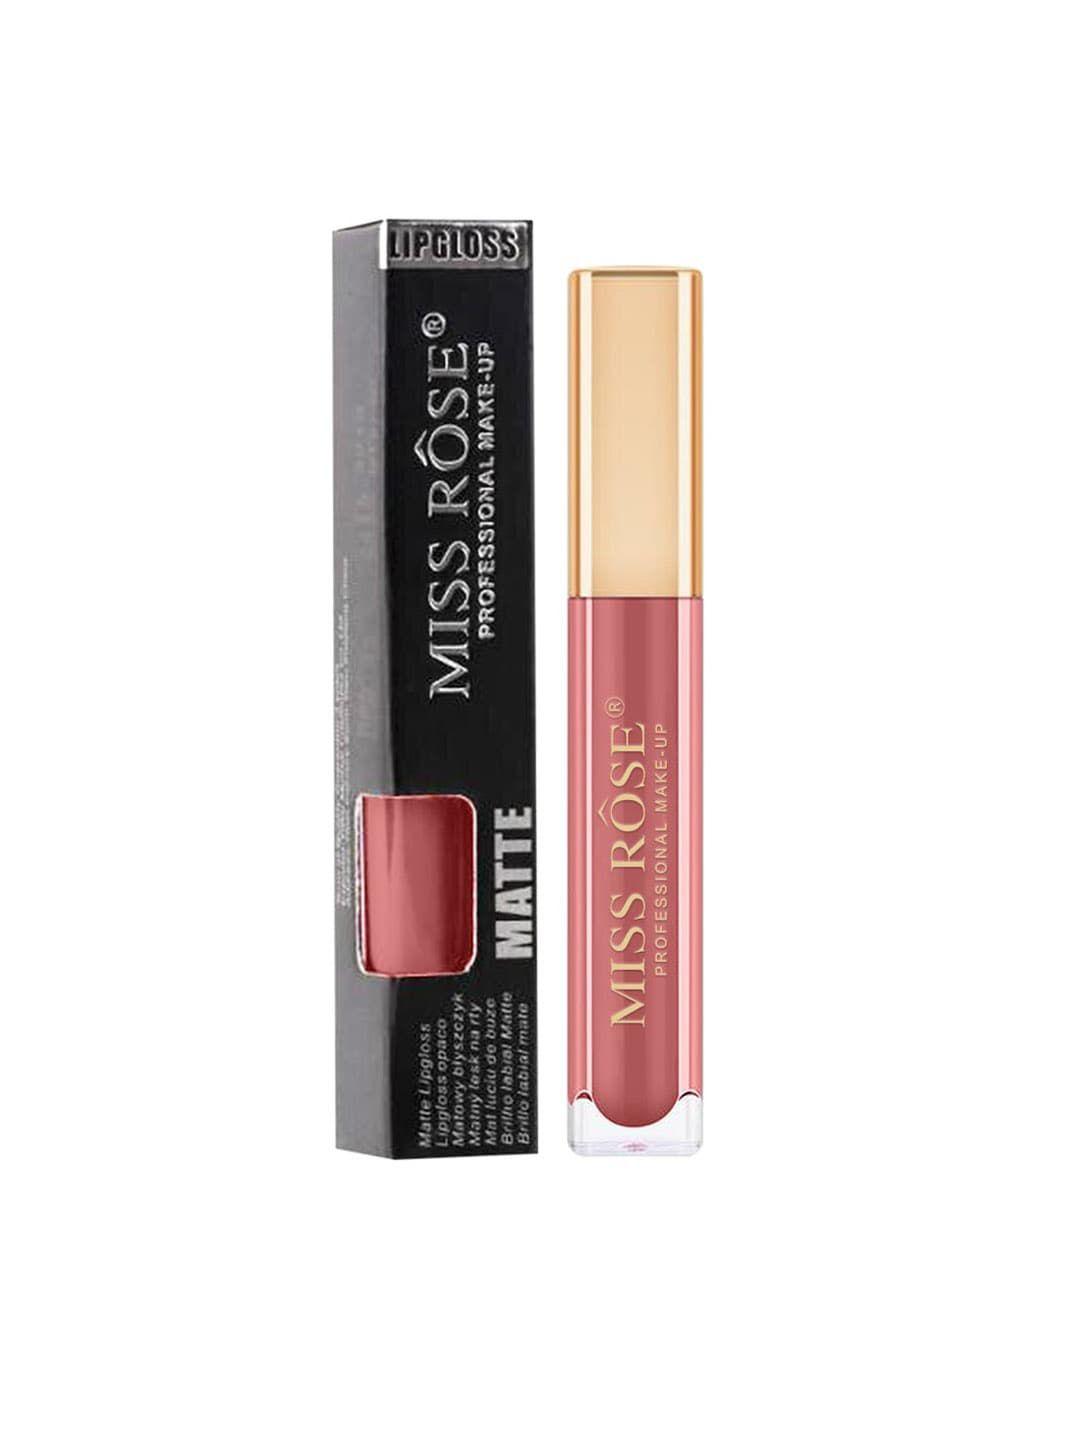 miss rose matte long lasting liquid lip gloss - 19 brown